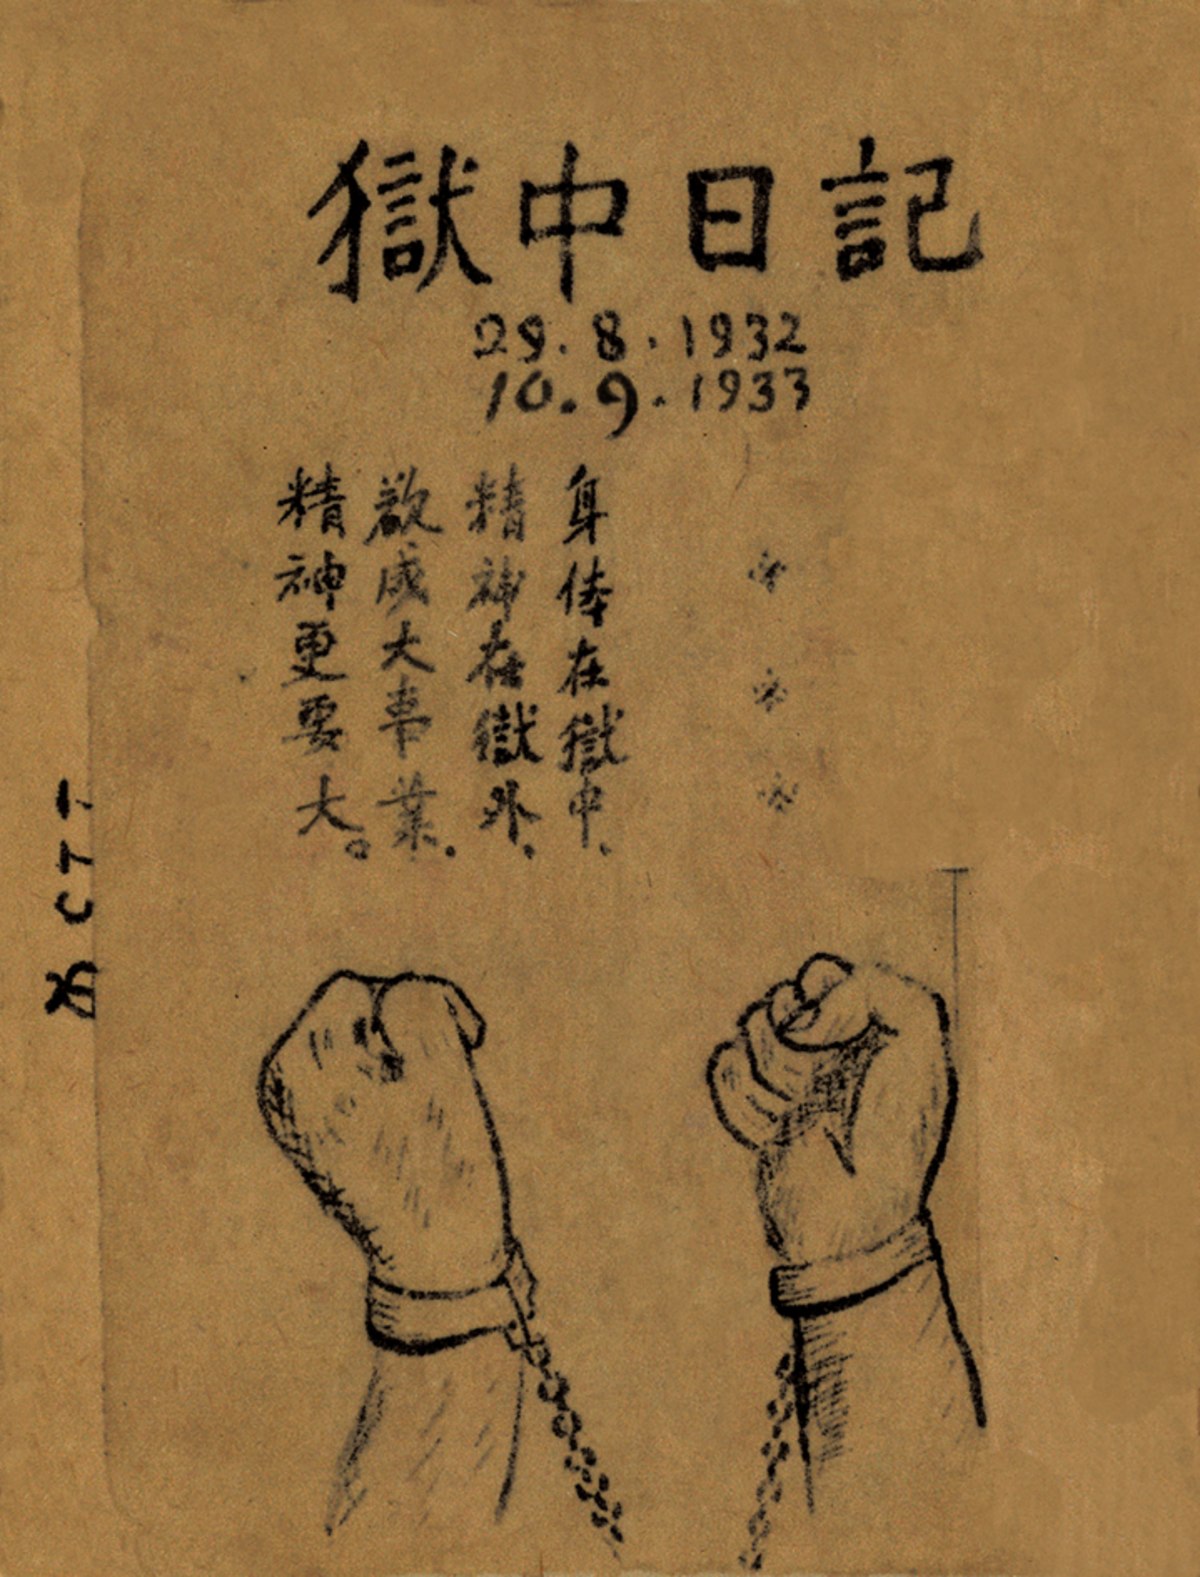 Chất “thép” trong tập thơ “Nhật kí trong tù” của Hồ Chí Minh